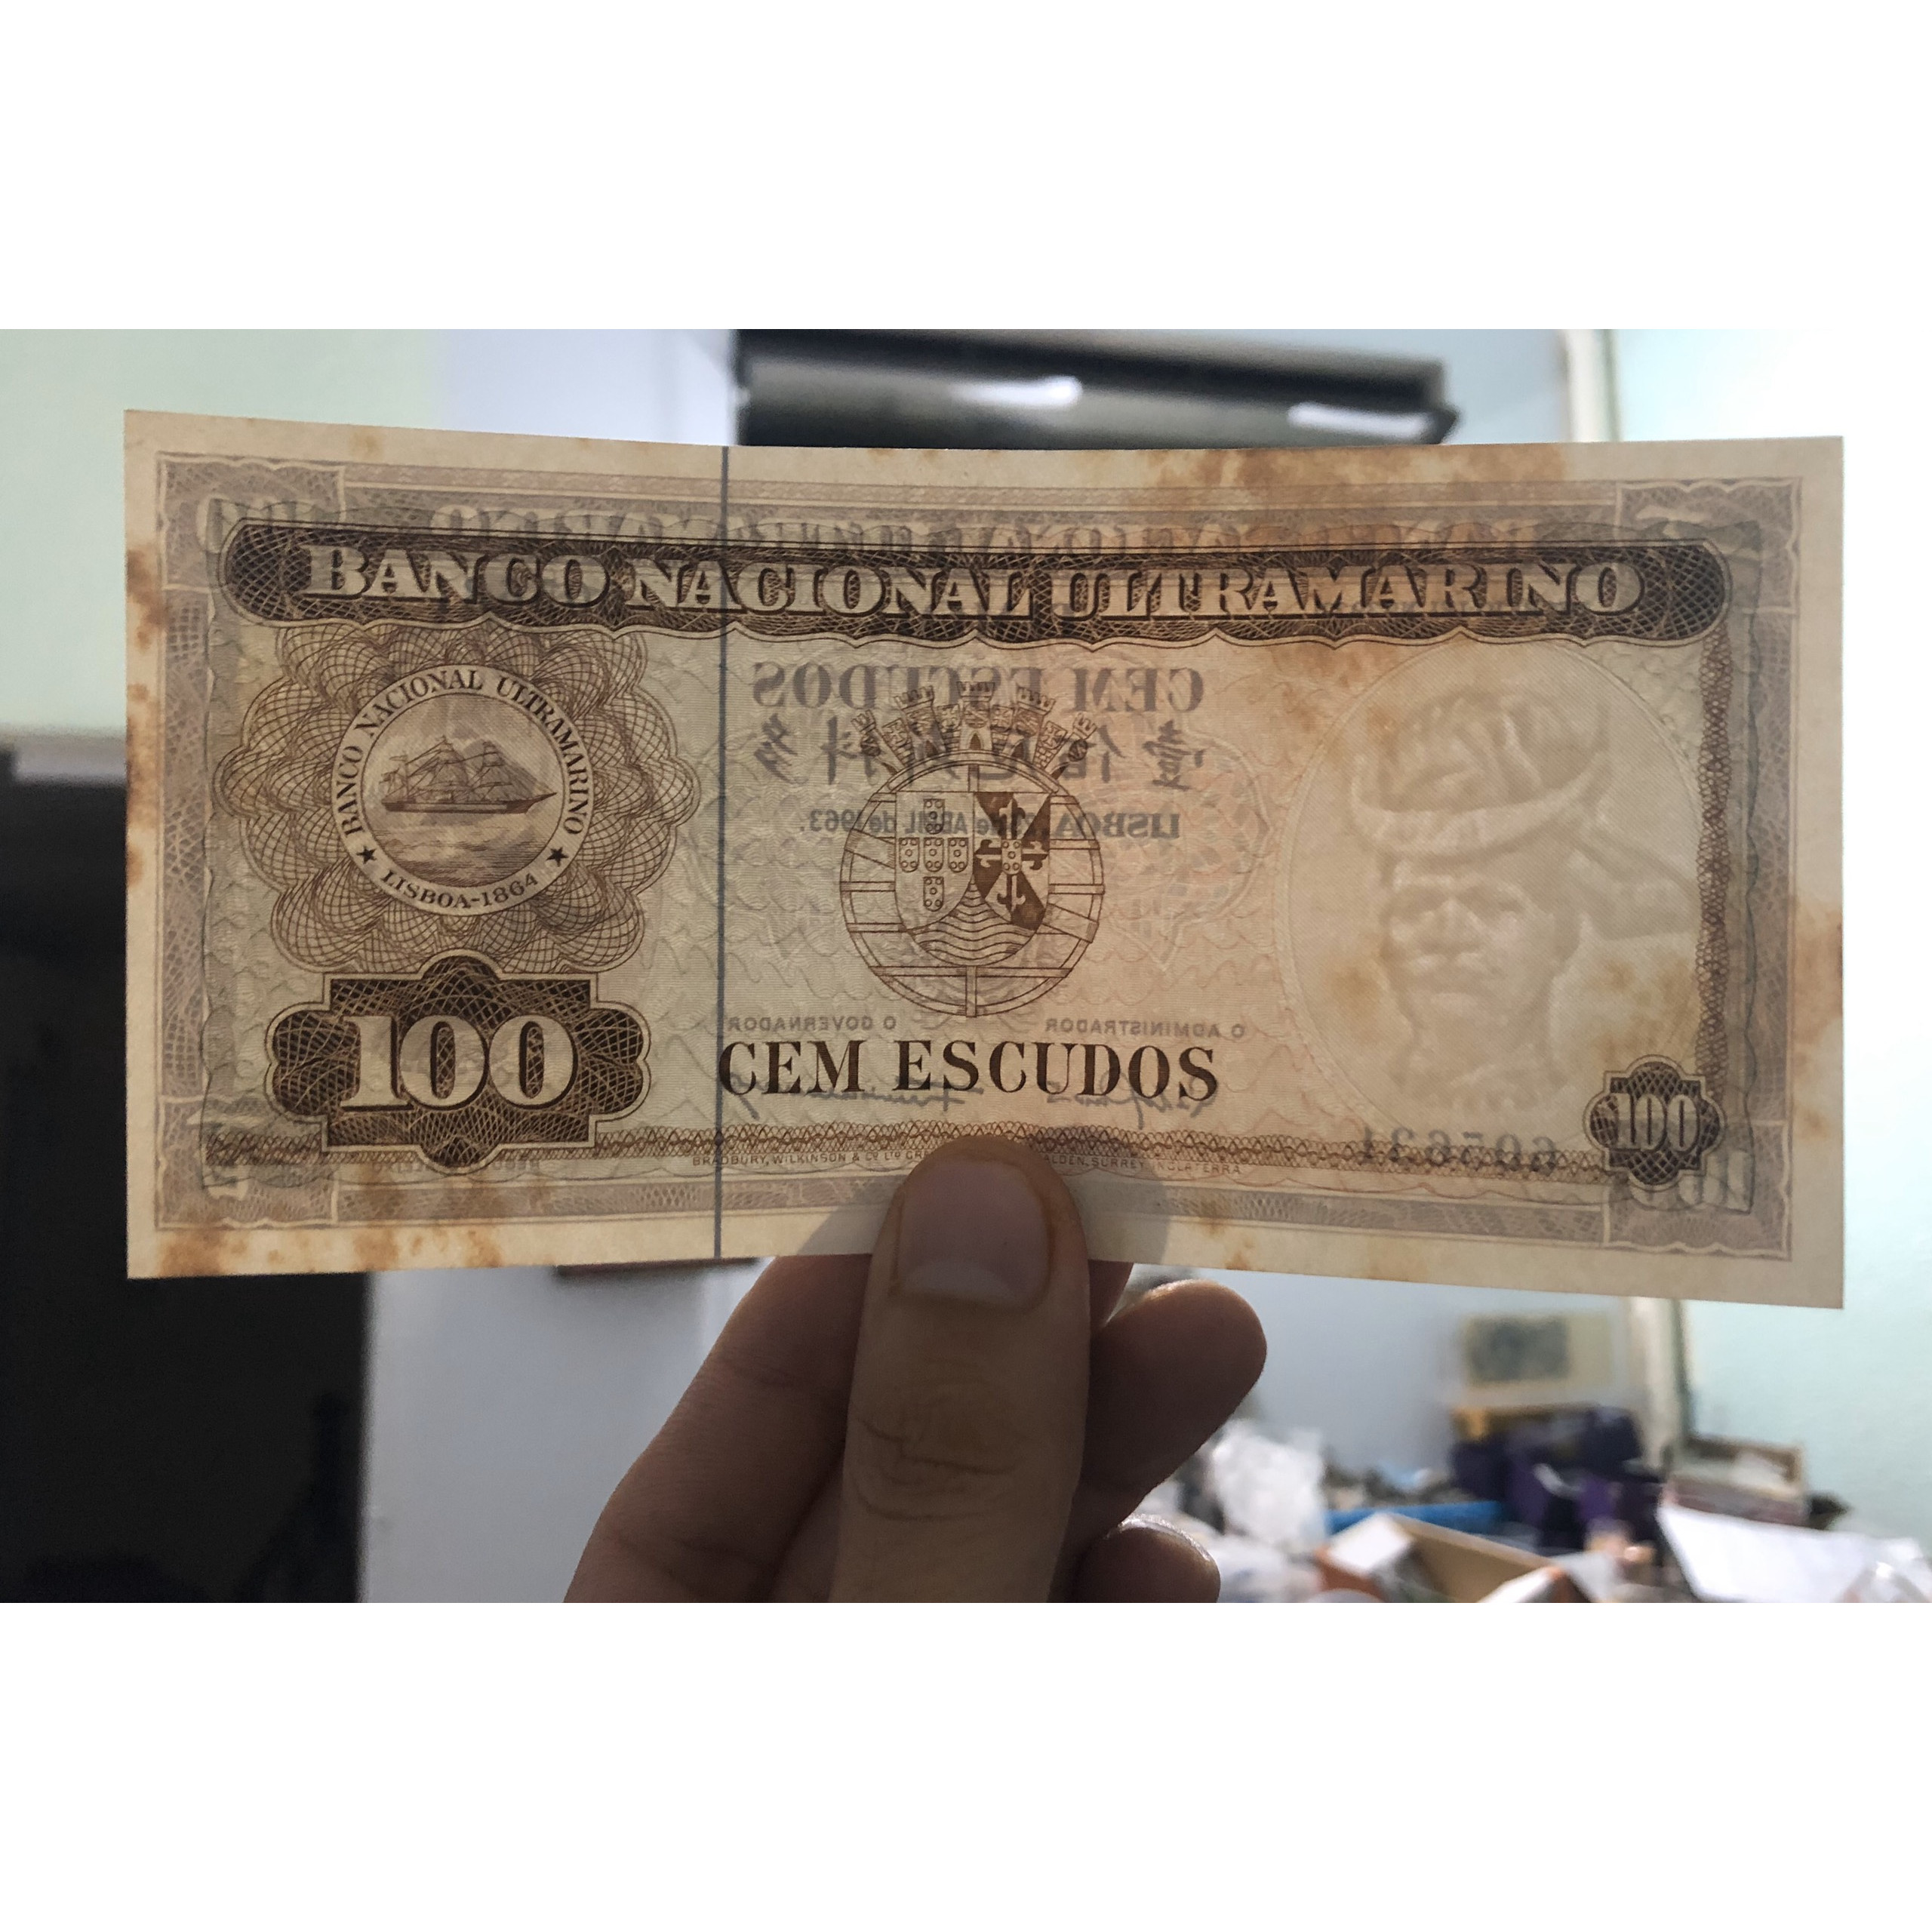 Tờ tiền cổ Đồng Ti Mo, quốc gia không còn tiền tiêu chính thống